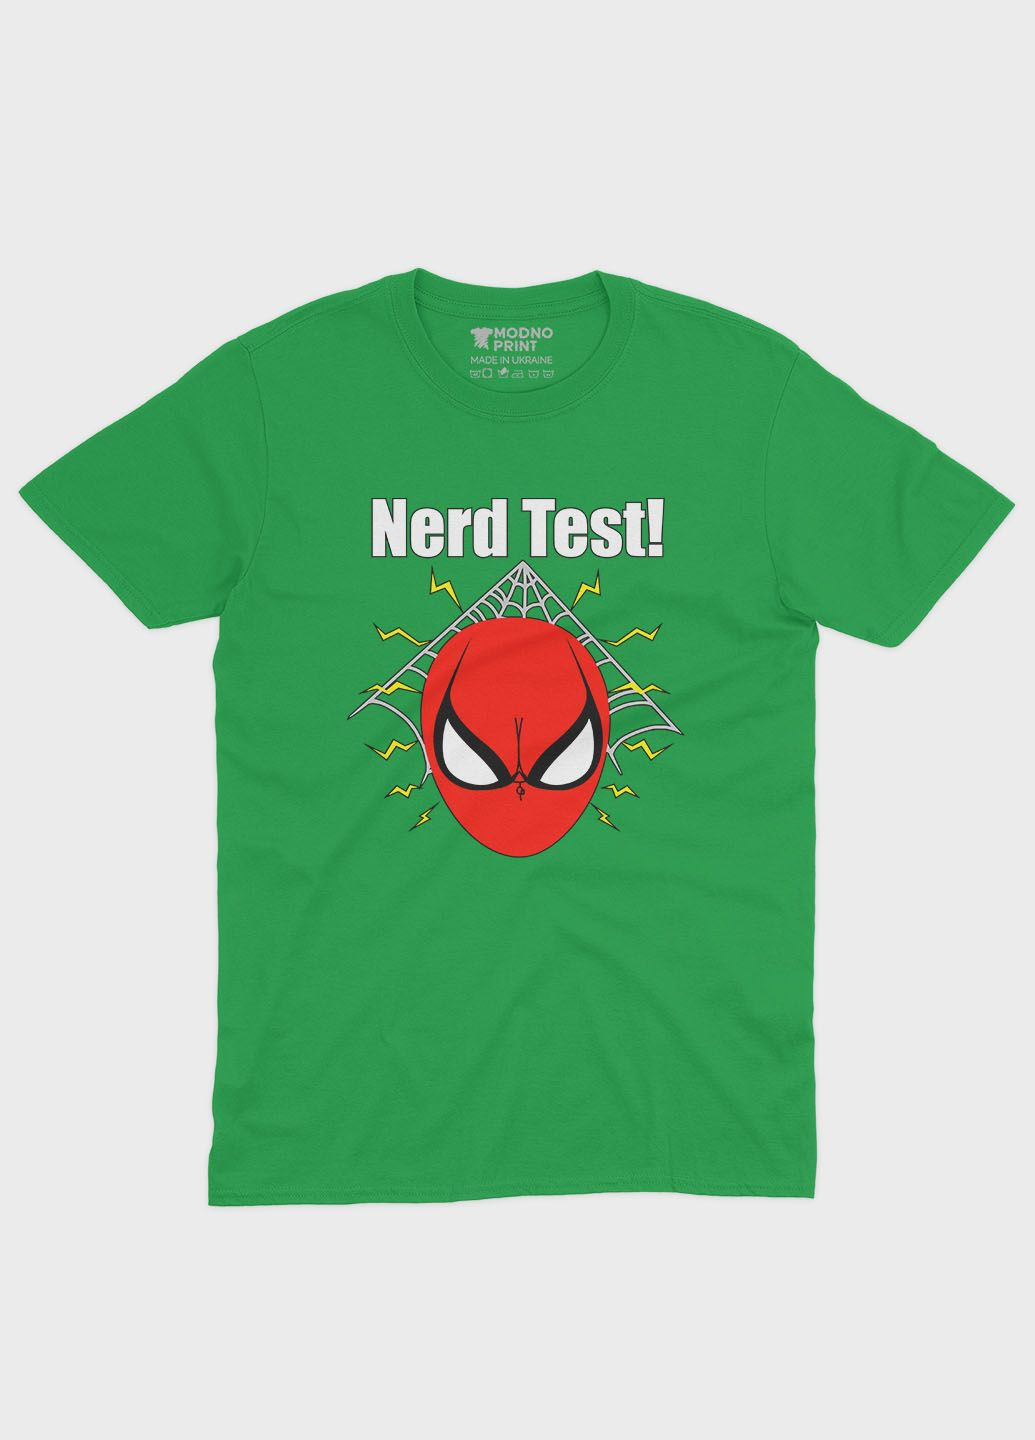 Зеленая демисезонная футболка для девочки с принтом супергероя - человек-паук (ts001-1-keg-006-014-104-g) Modno